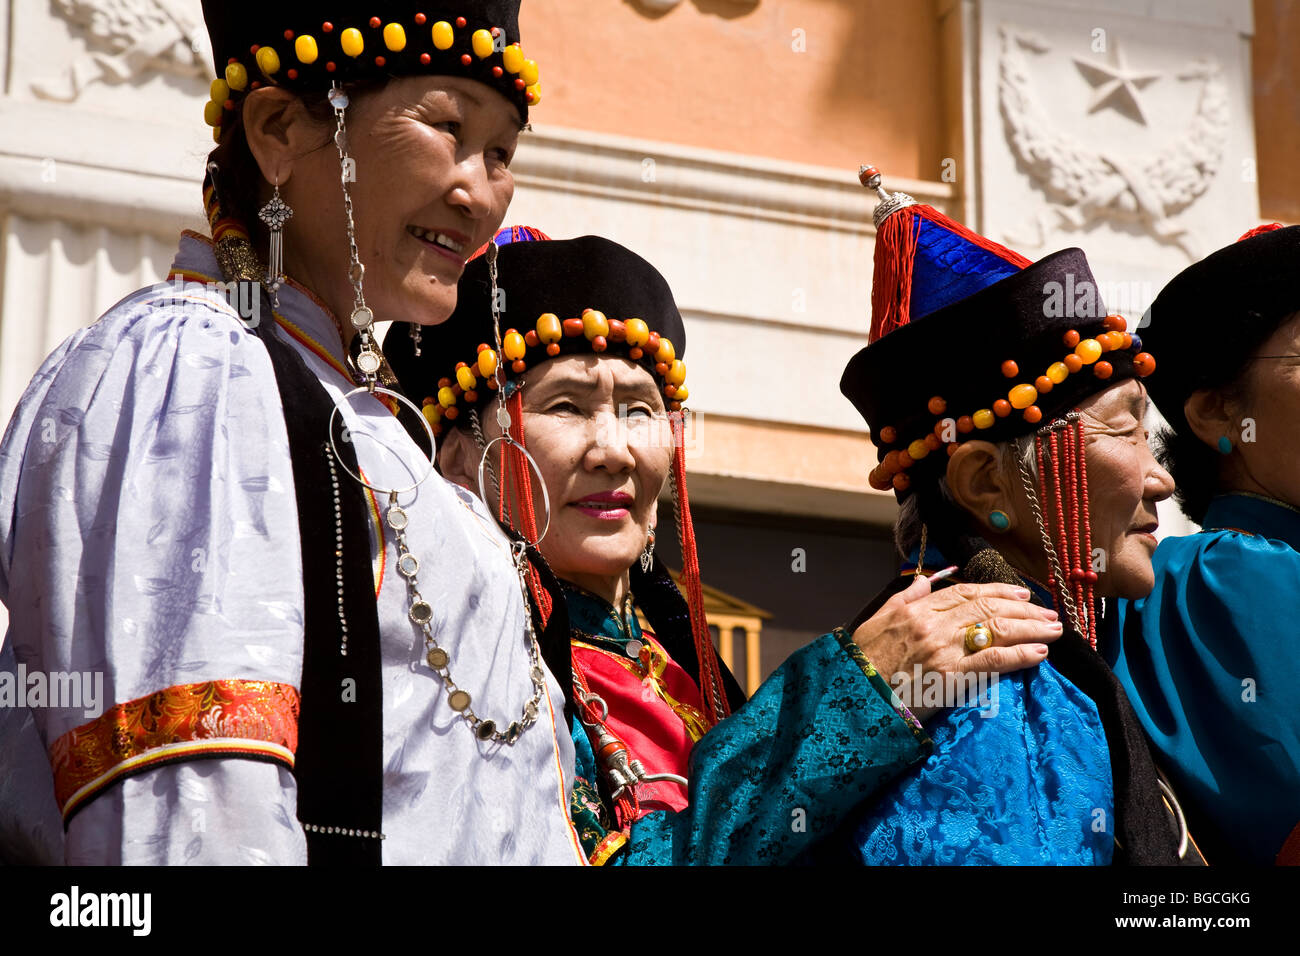 Damit umgehen Anthologie Strafe mongolen kostüm damen Goodwill Hypothek